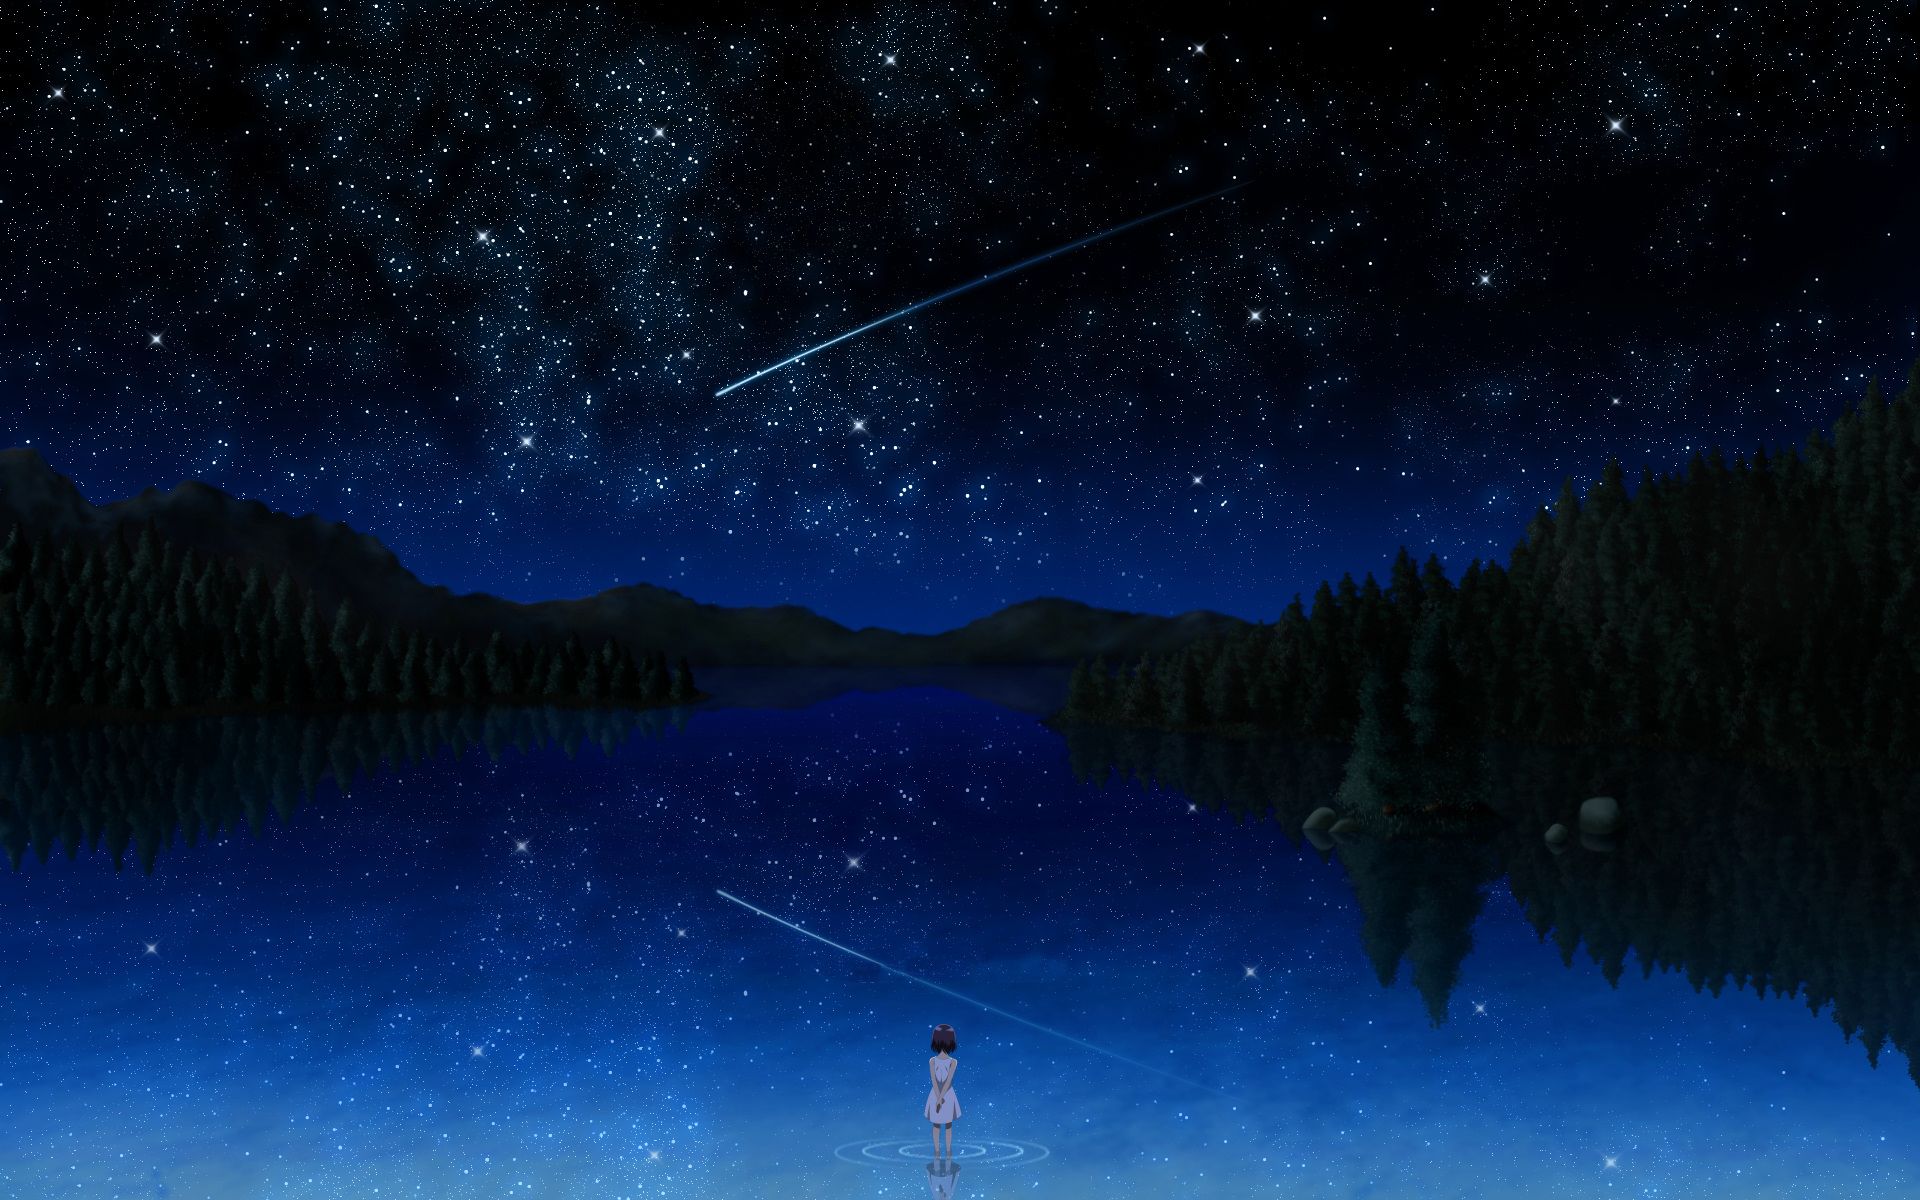 Anime Night Sky Wallpaperx1200. Anime scenery wallpaper, Night scenery, Anime scenery